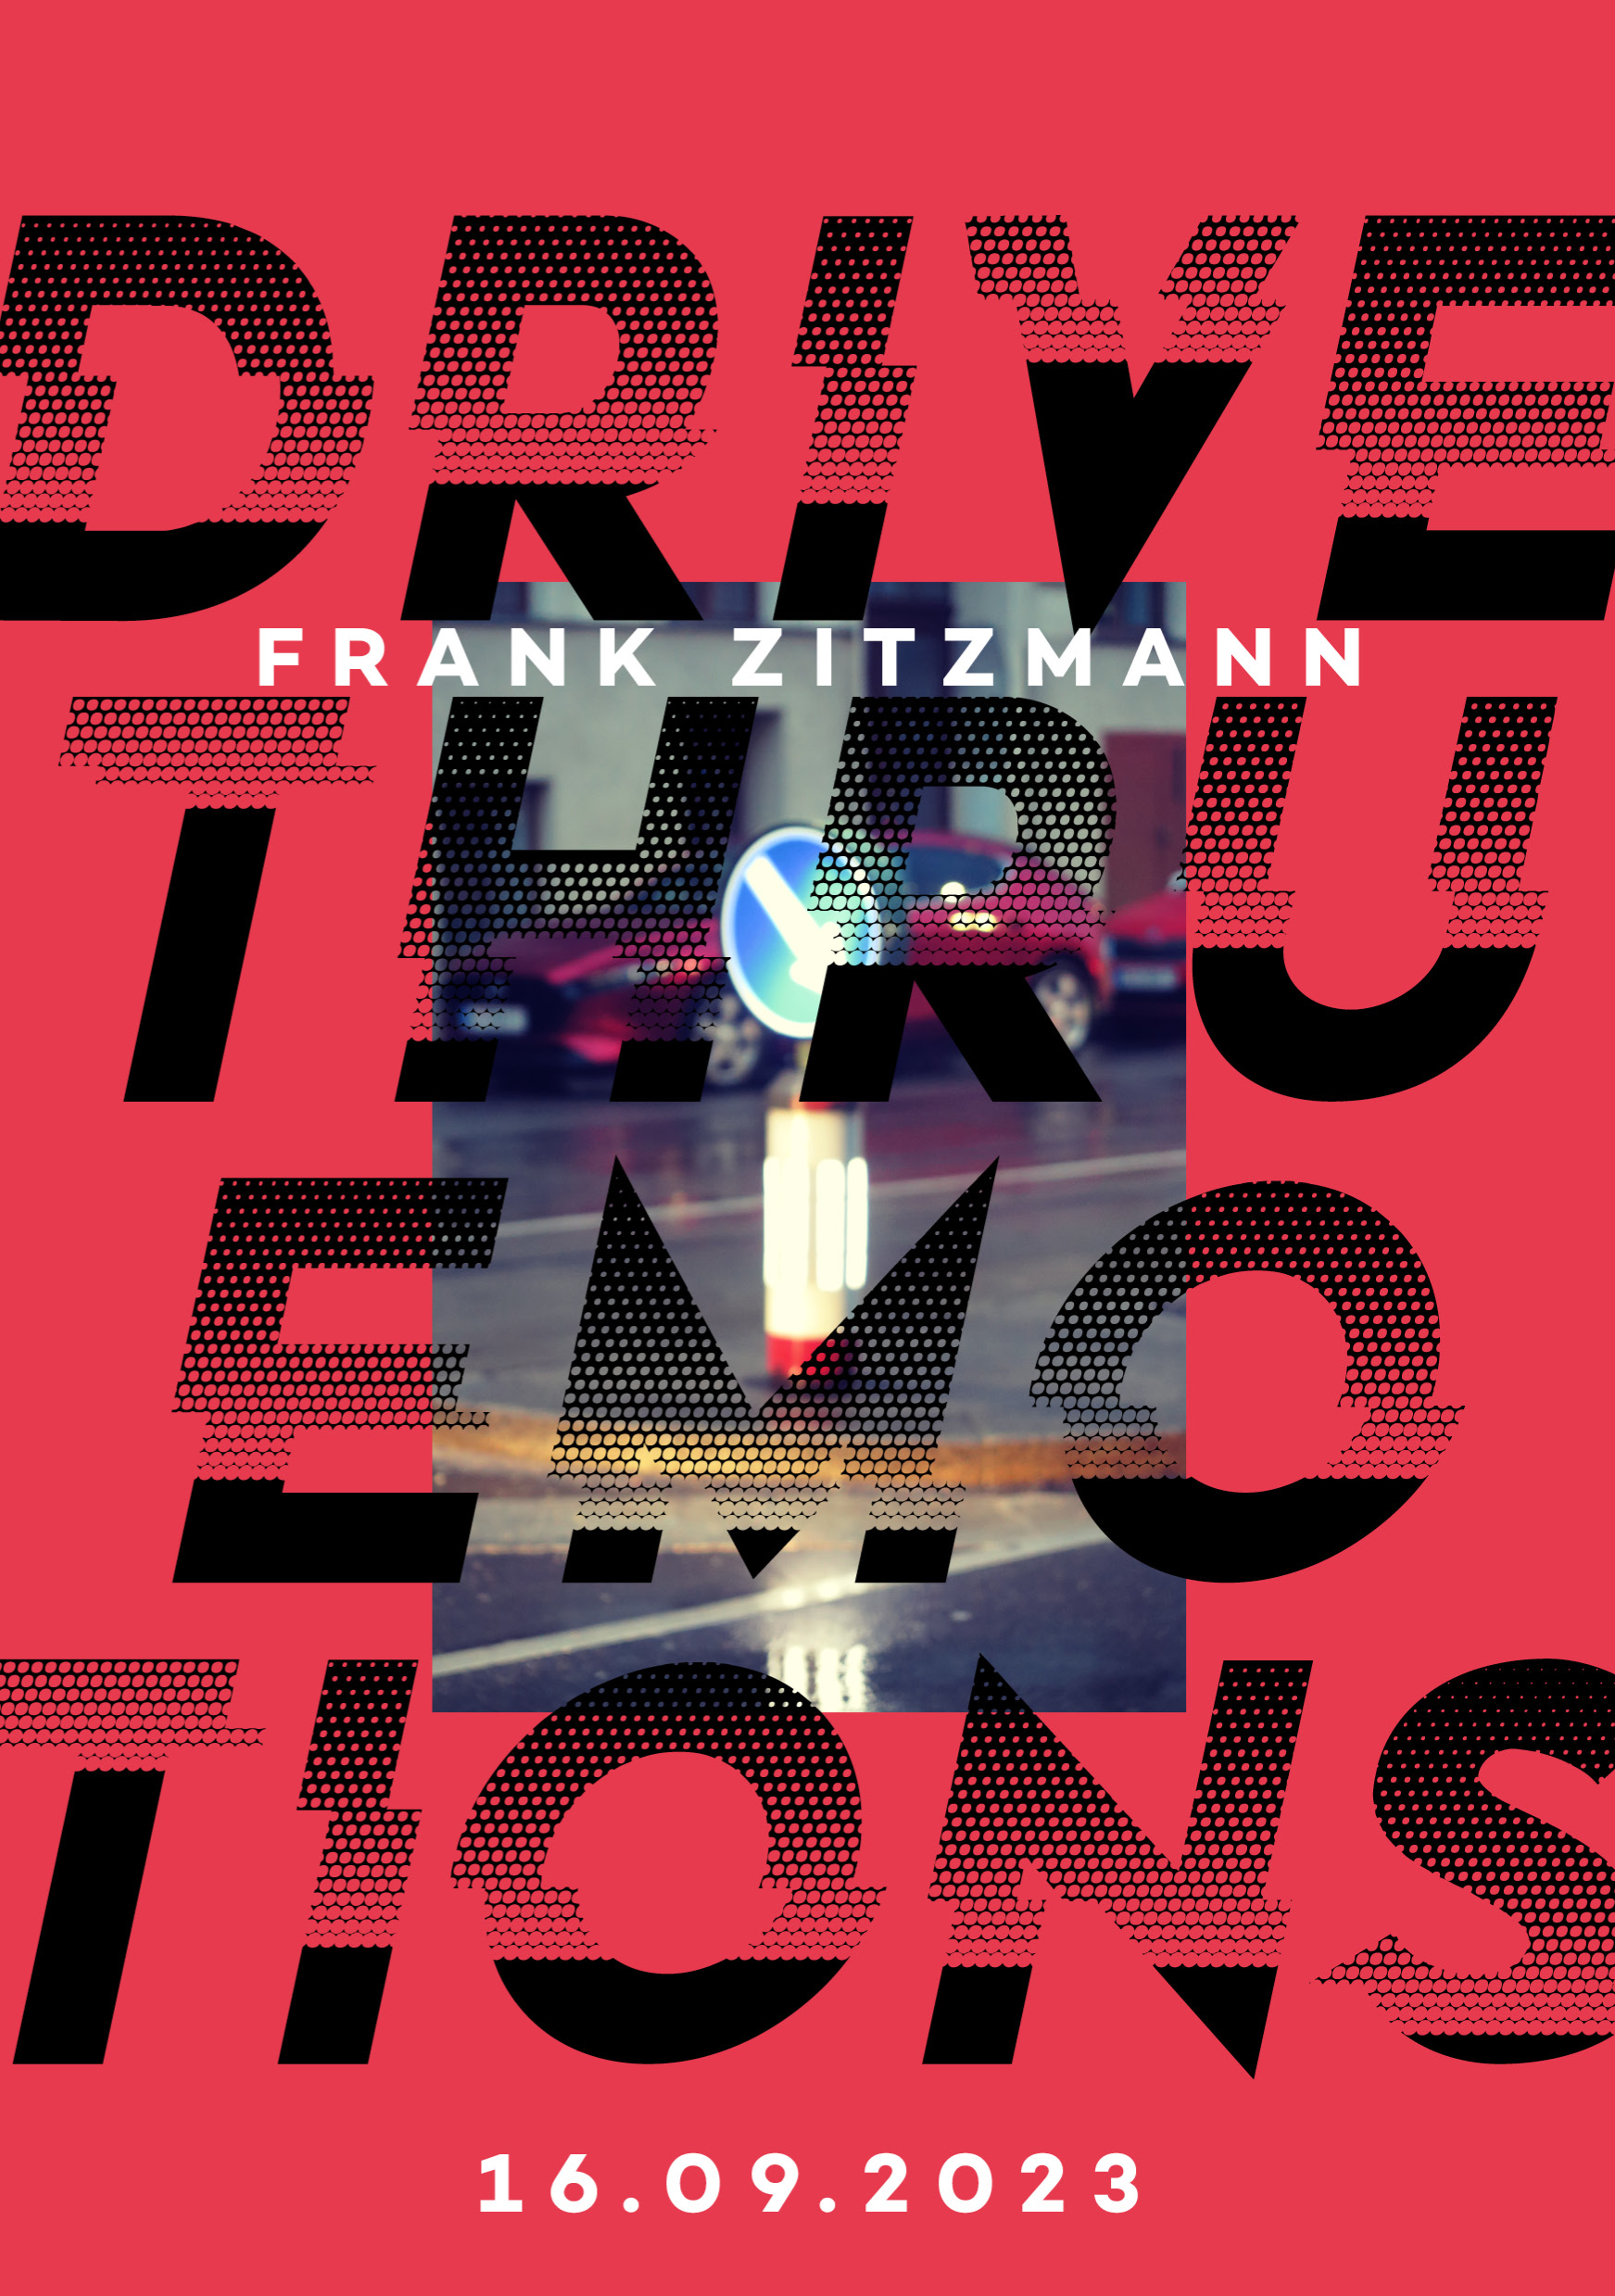 Frank Zitzmann: Drive Thru Emotions